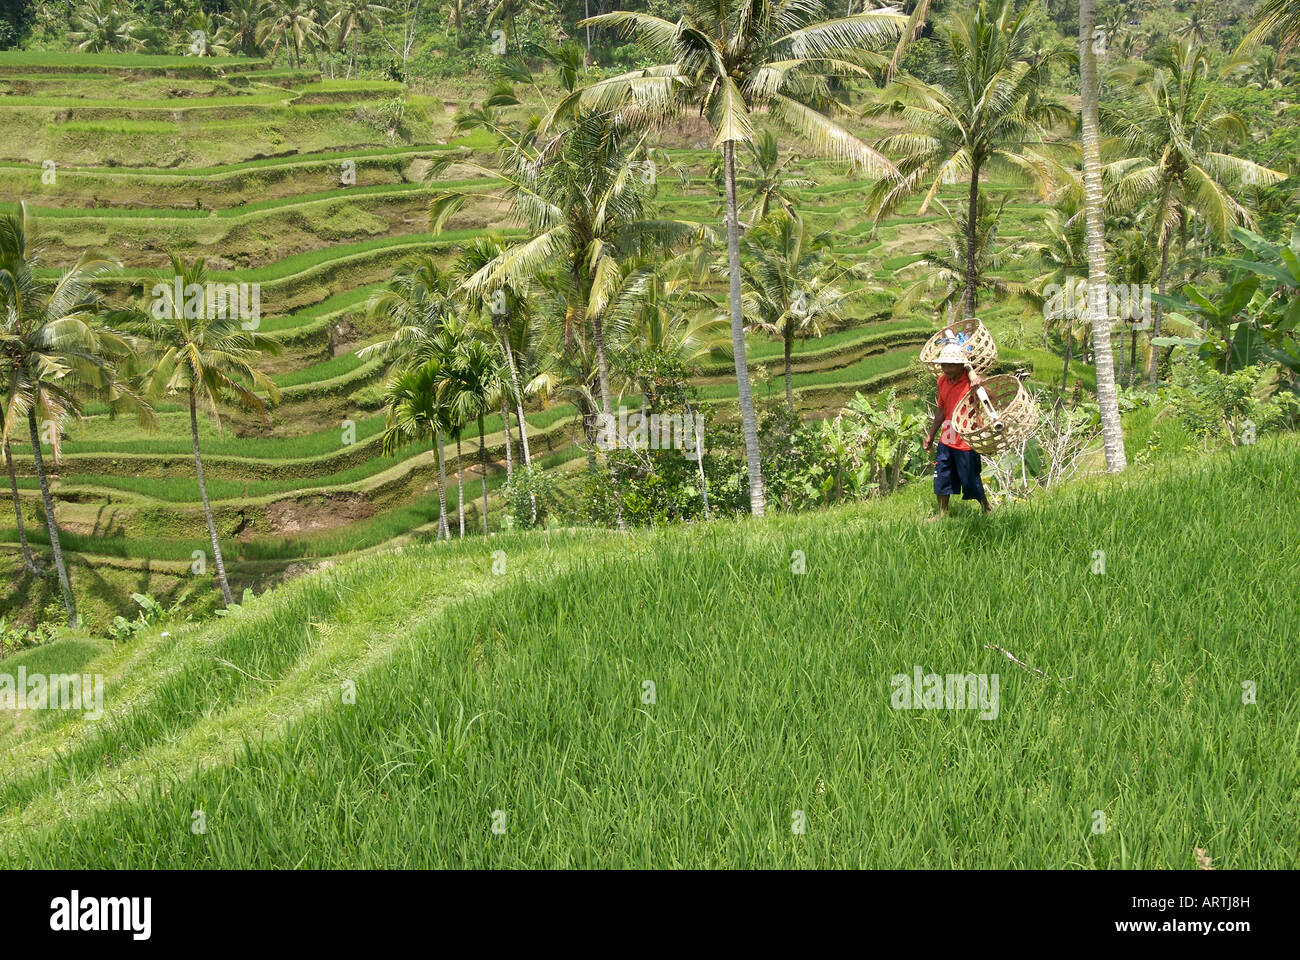 Un granjero lleva cestas de arroz a través de campos de arroz en terrazas, cerca de la ciudad de Ubud, Bali, Indonesia Foto de stock